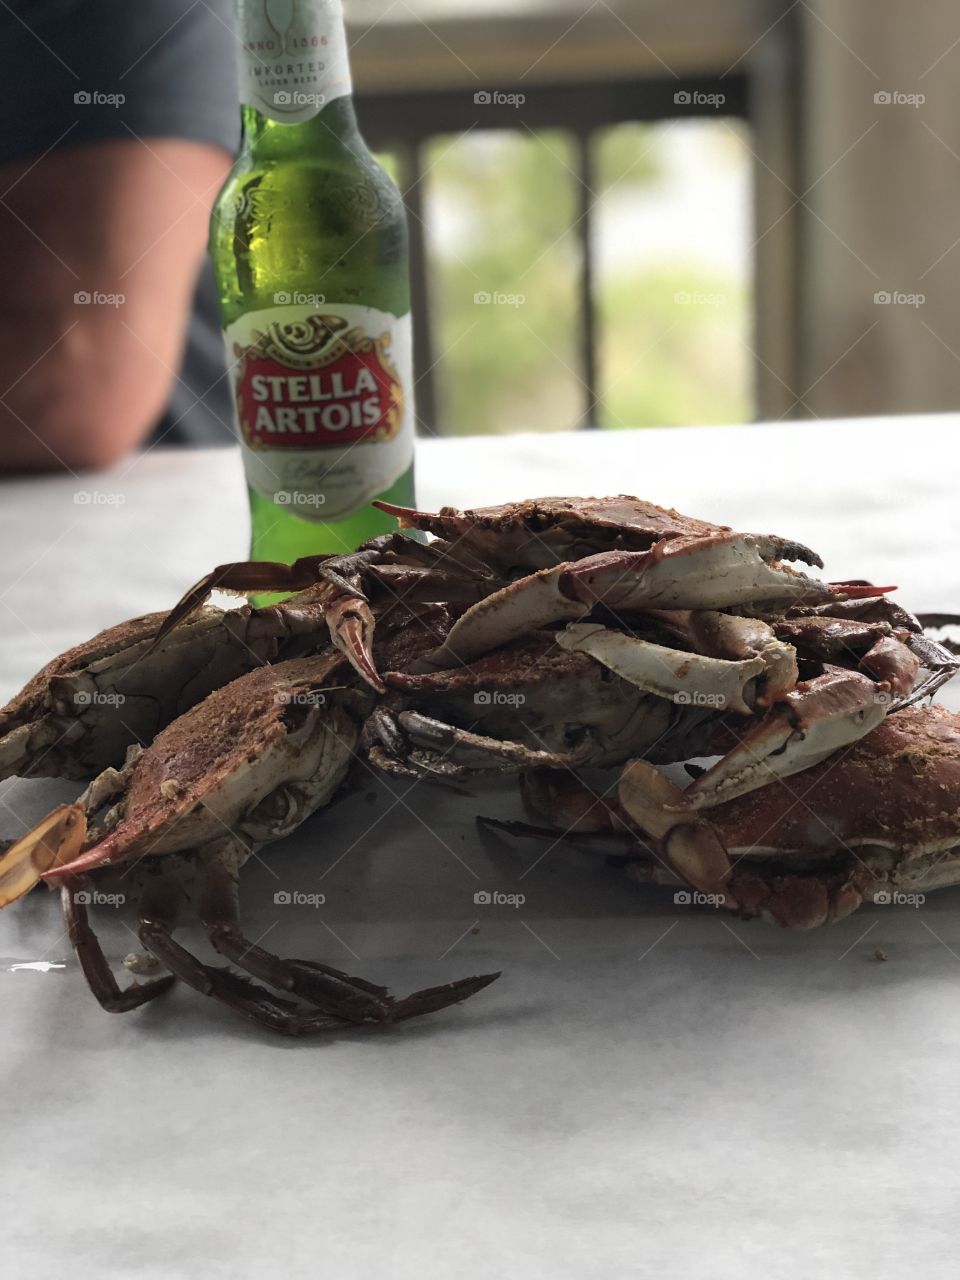 Crabs & beer